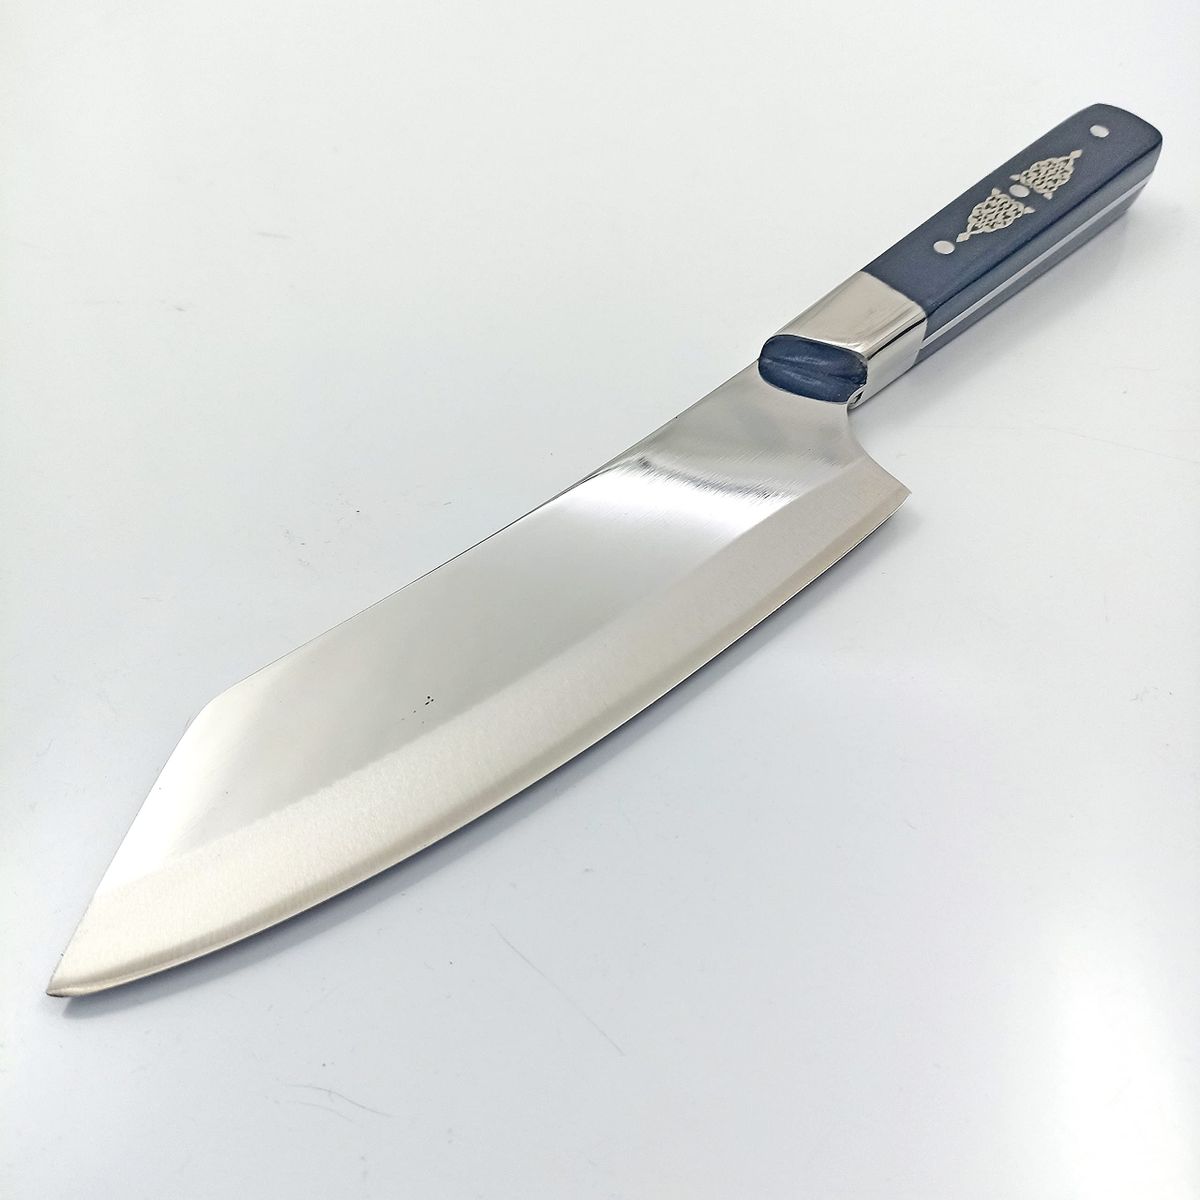 Japon Bıçakları & Japon Şef Bıçağı Fiyatları - Cimri - Sayfa 2